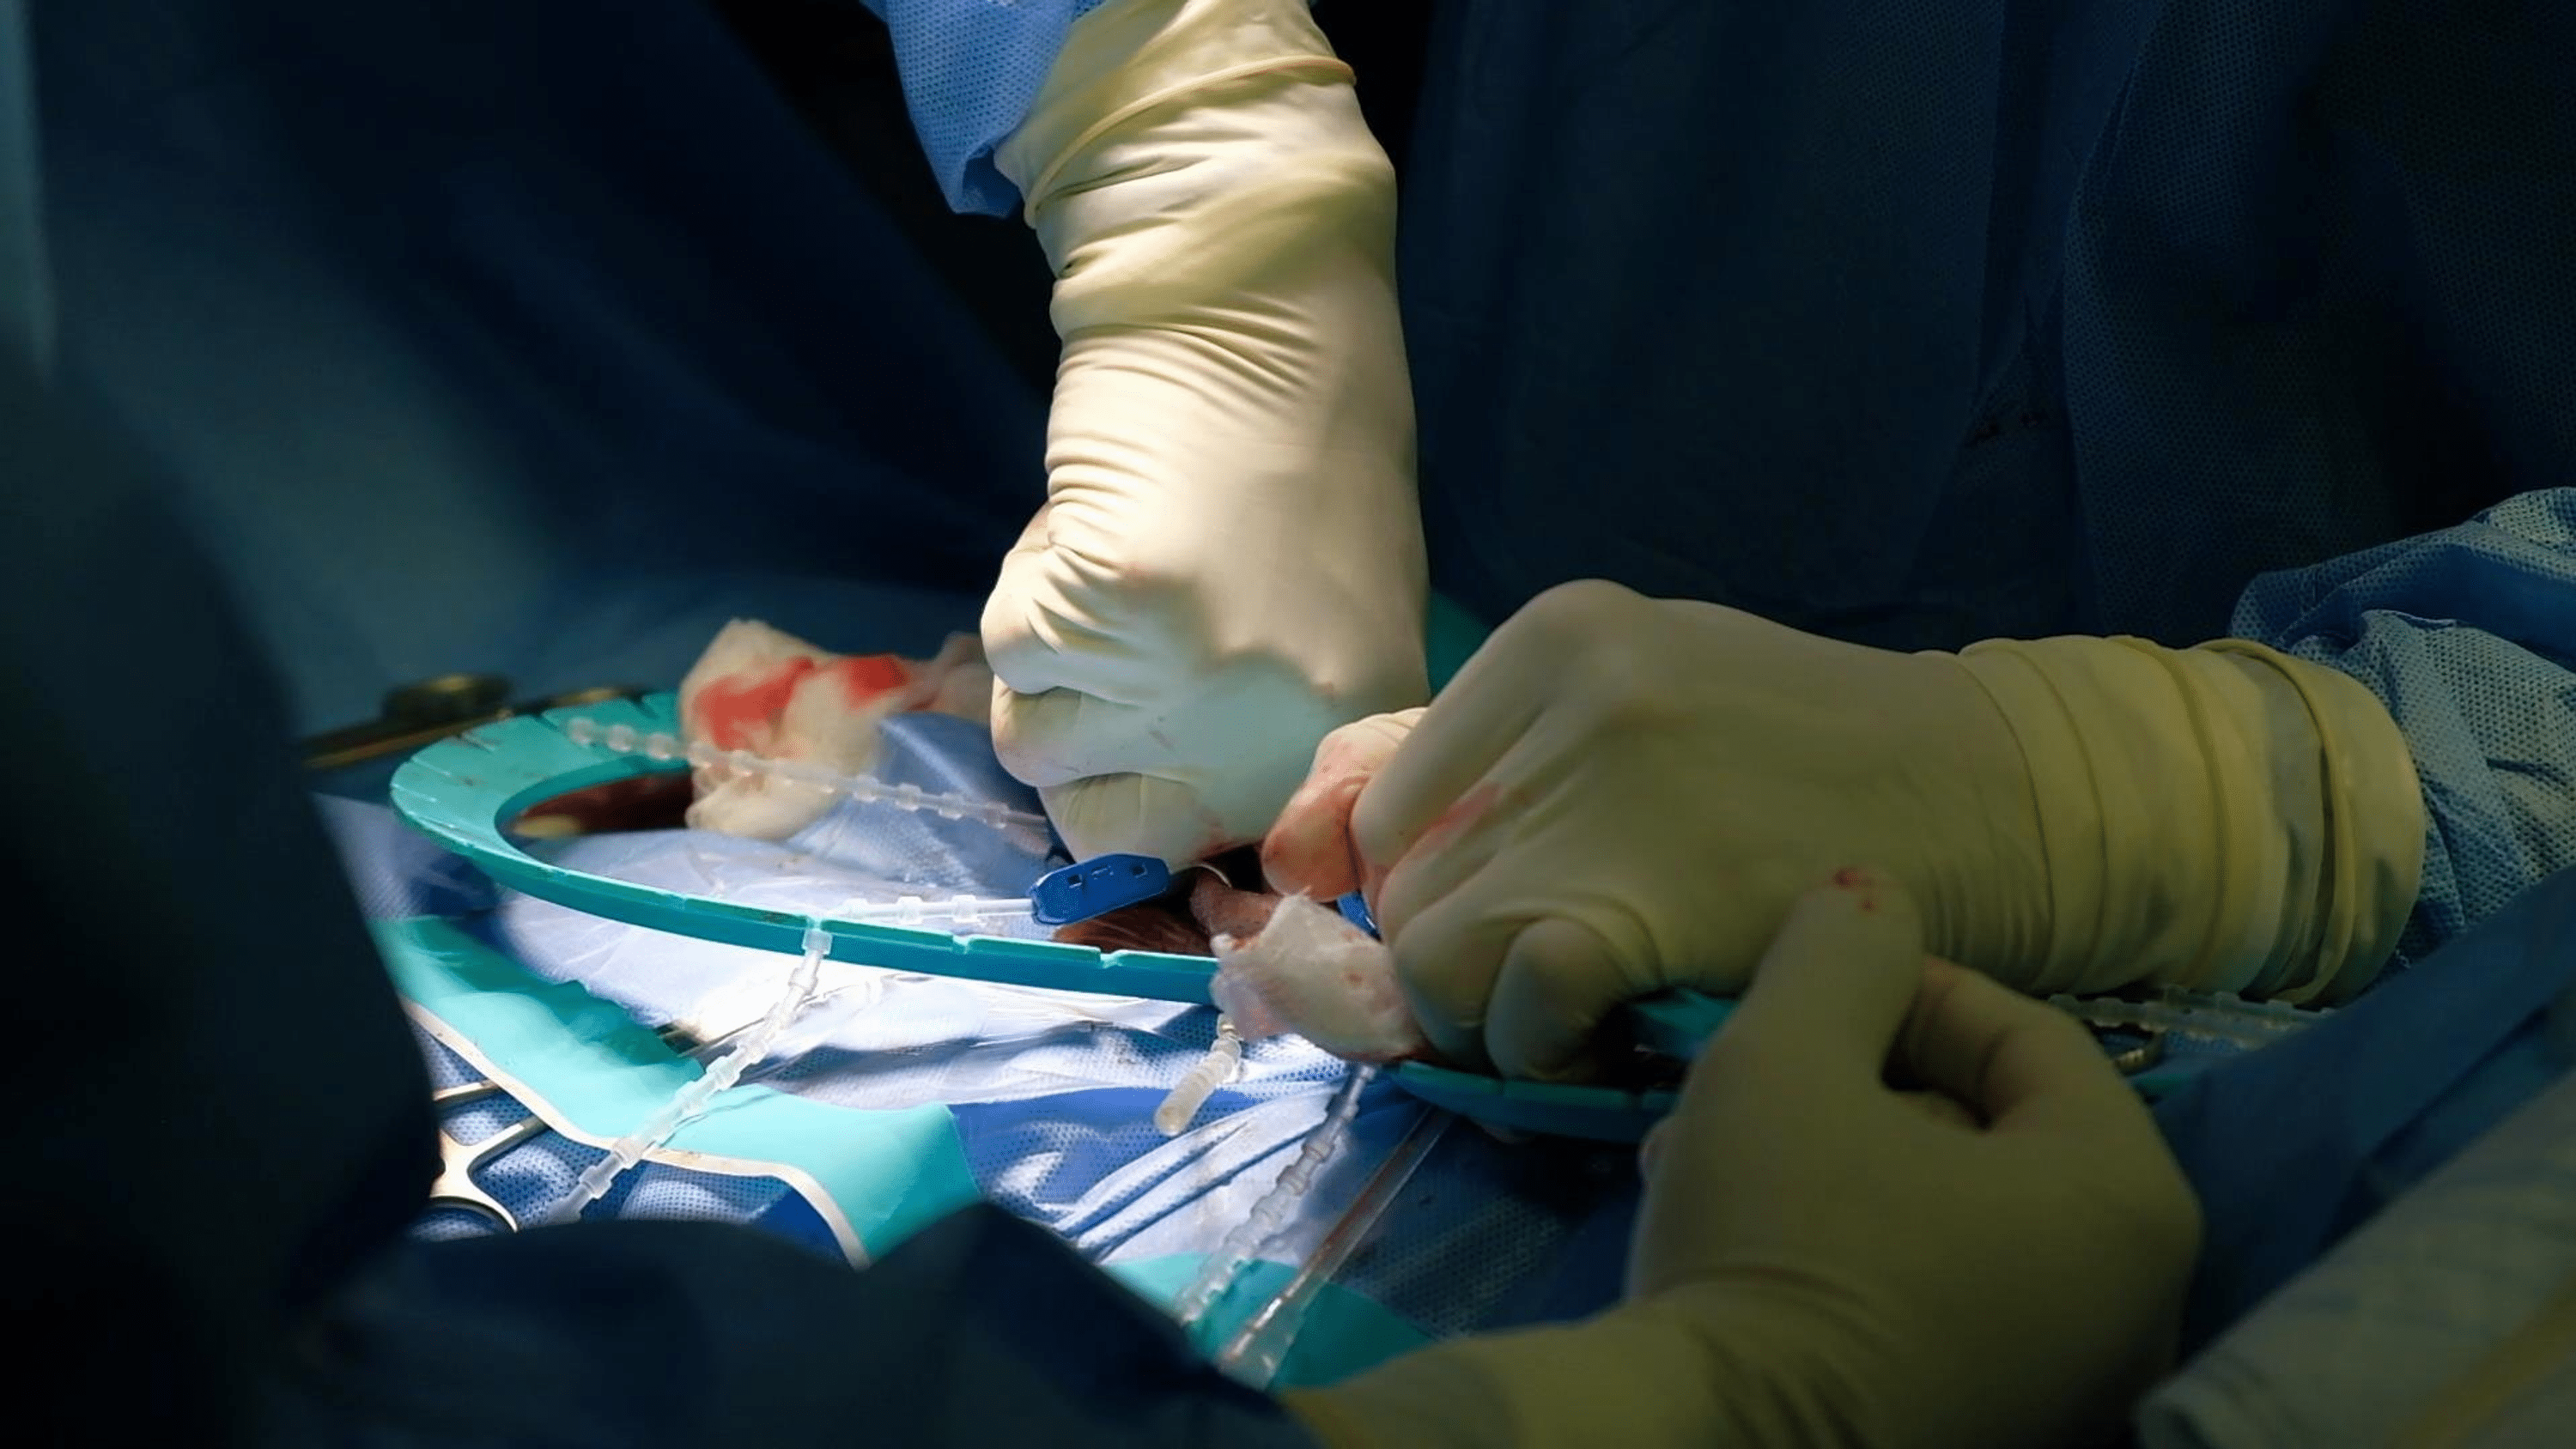 Penile prosthesis: Hãy tìm hiểu về phương pháp trợ giúp bệnh nhân bị rối loạn chức năng cương dương: bộ phận cấy ghép \